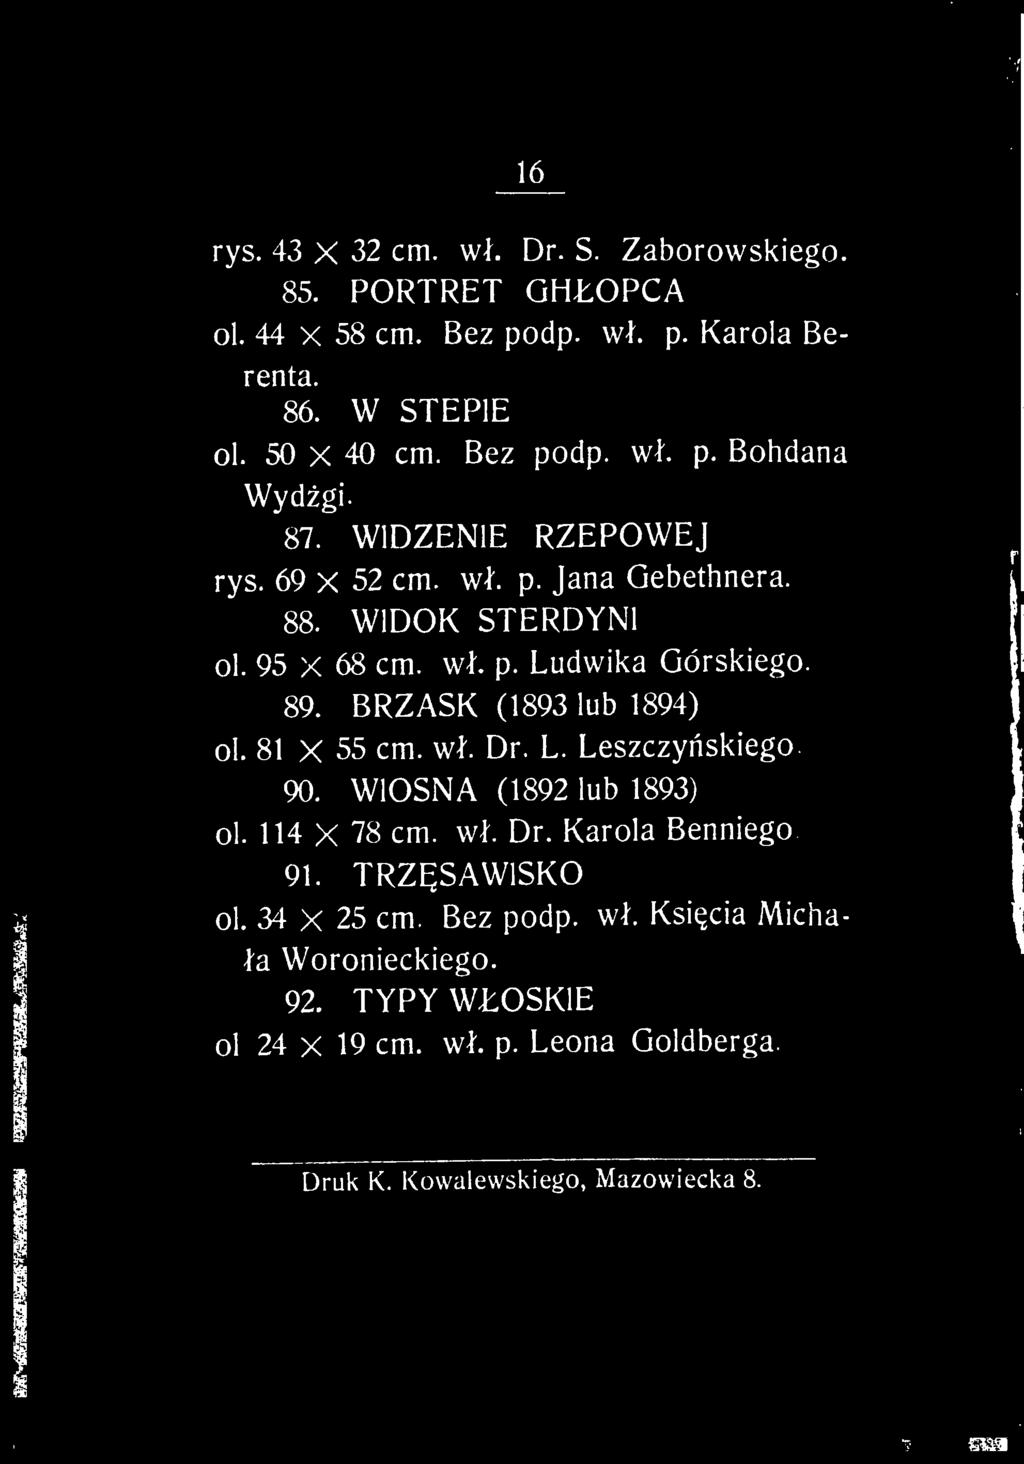 BRZASK (1893 lub 1894) ol. 81 X 55 cm. wf. Dr. L. Leszczy?skiego. 90. WIOSNA (1892 lub 1893) ol. 114 X 78 cm. wf. Dr. Karola Benniego 91. TRZ?